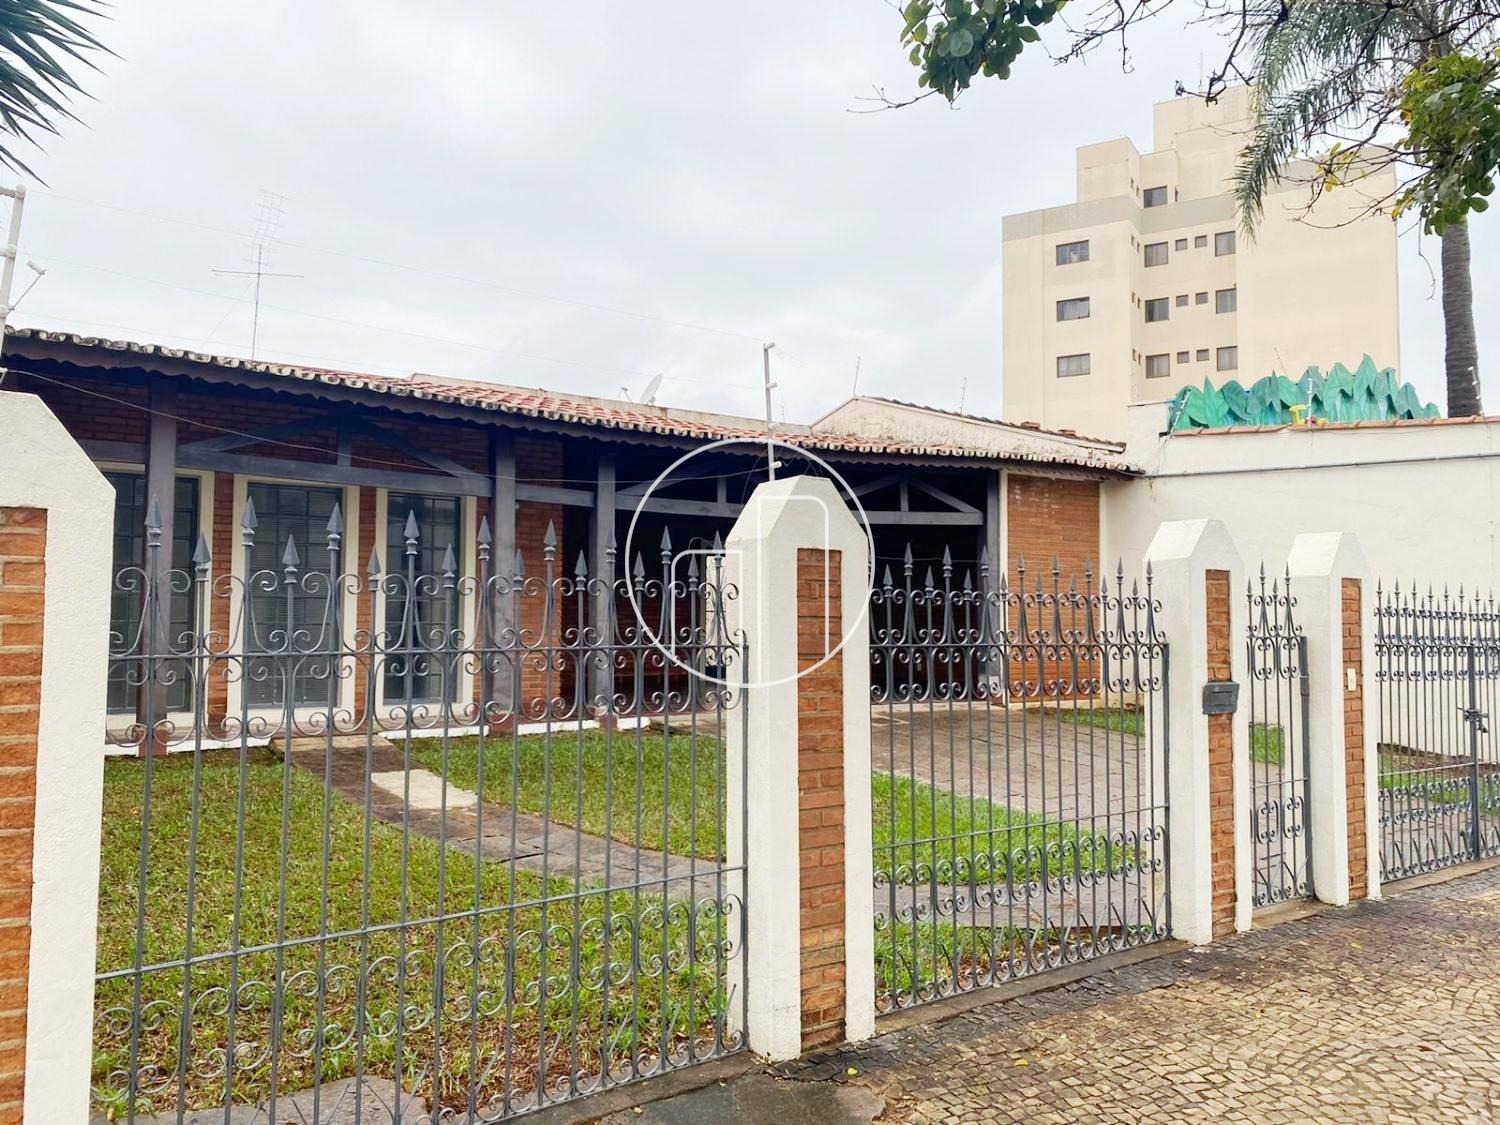 Piccoloto - Casa à venda no São Quirino em Campinas